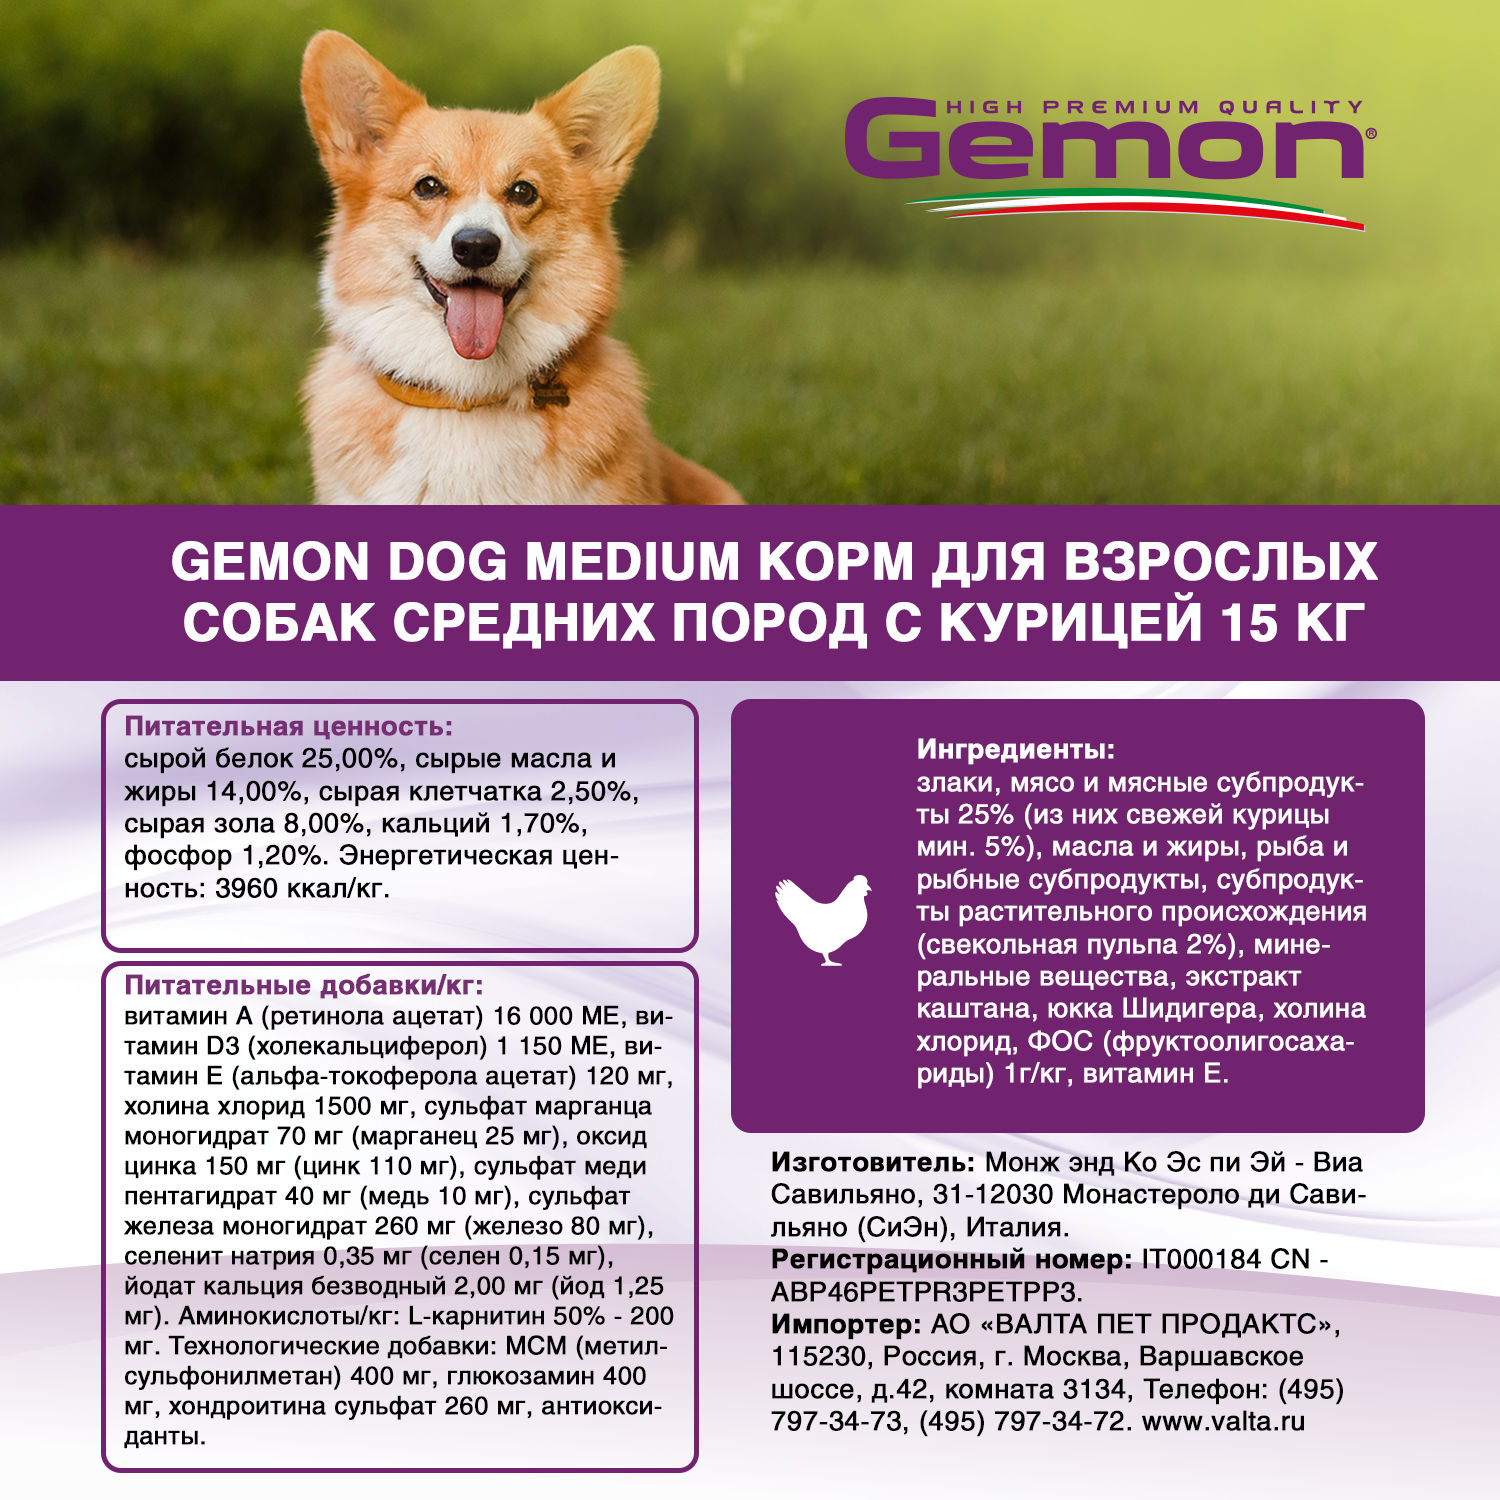 Сухой корм Gemon Dog Medium корм для взрослых собак средних пород, с курицей 15 кг